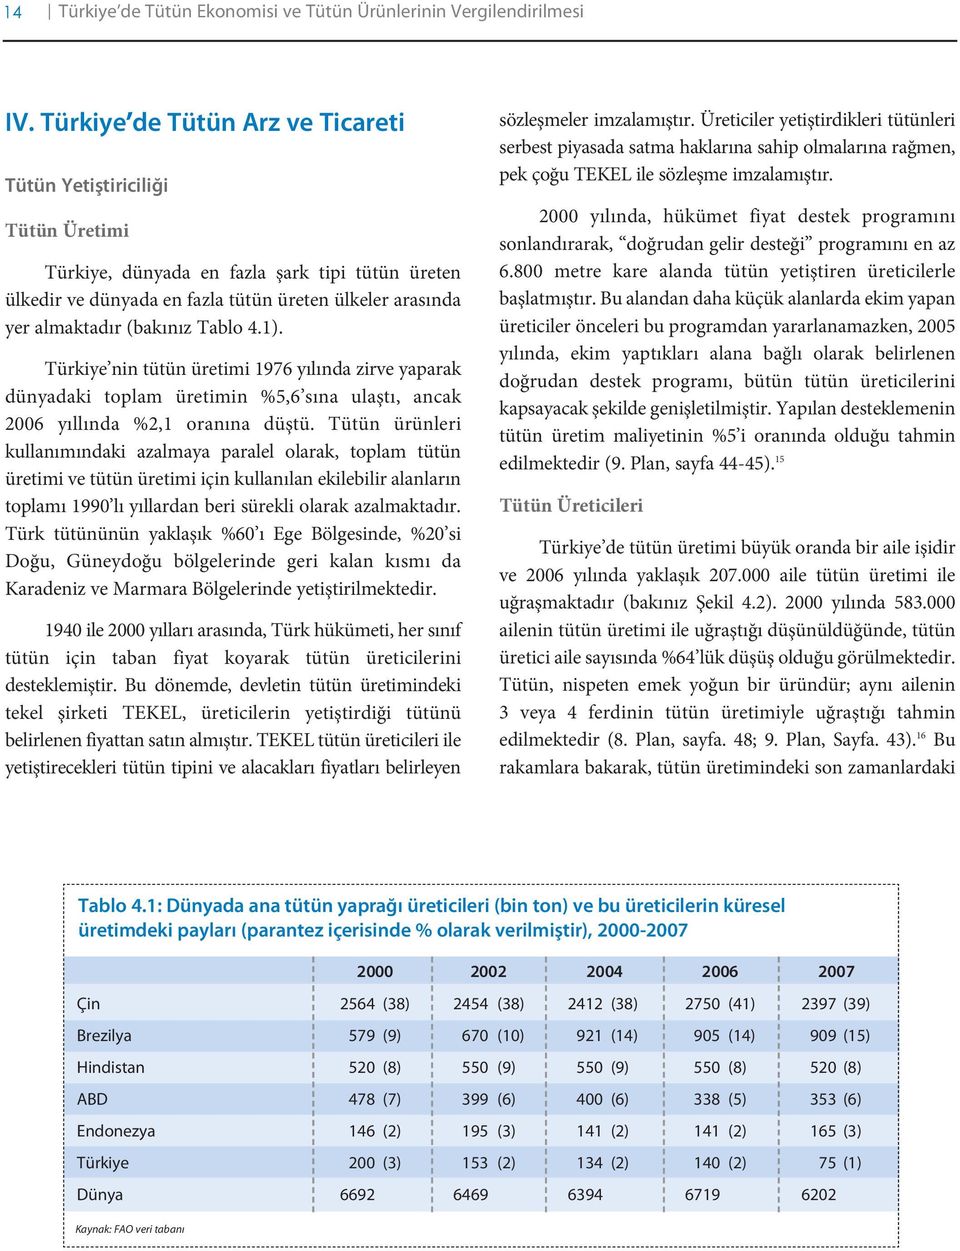 Tablo 4.1). Türkiye nin tütün üretimi 1976 yılında zirve yaparak dünyadaki toplam üretimin %5,6 sına ulaştı, ancak 2006 yıllında %2,1 oranına düştü.